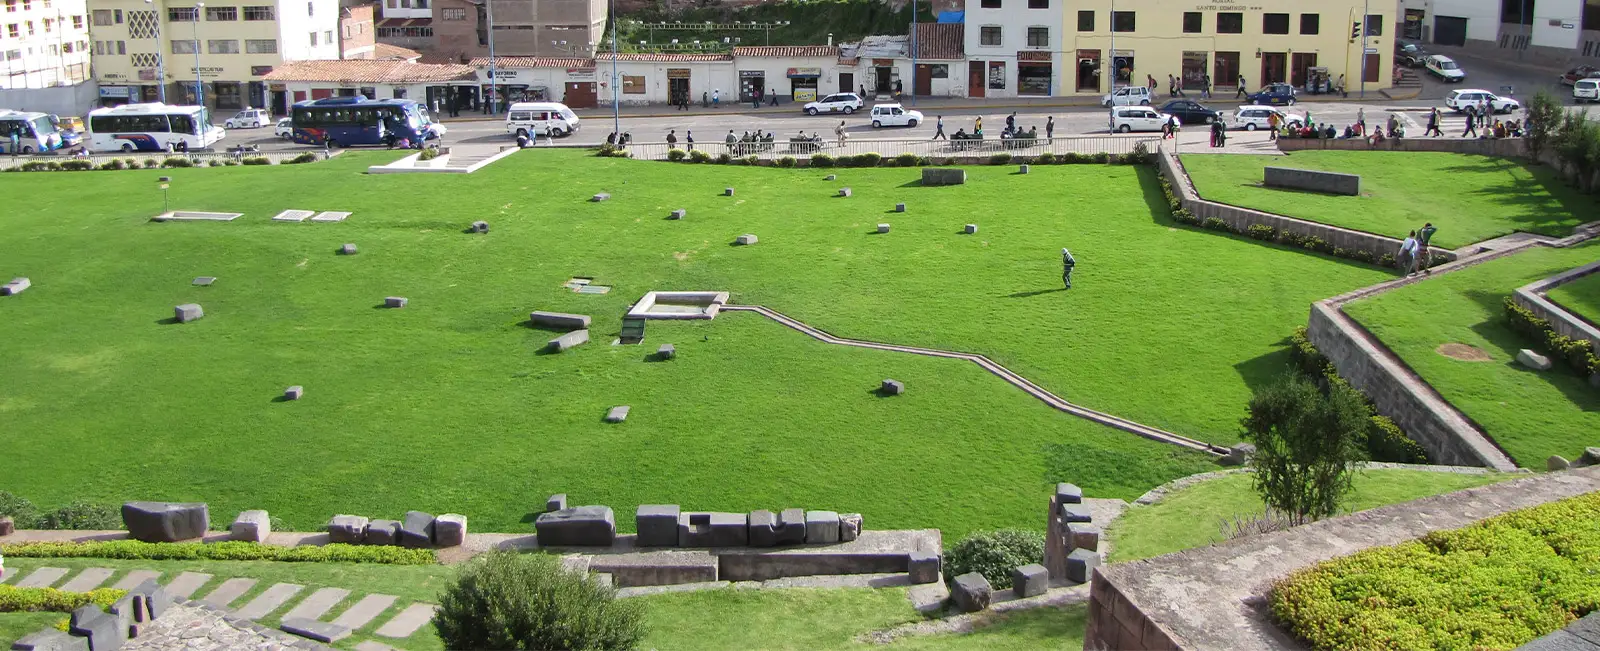 Qoricancha - The 10 Best Inca Ruins you Must Visit in Peru